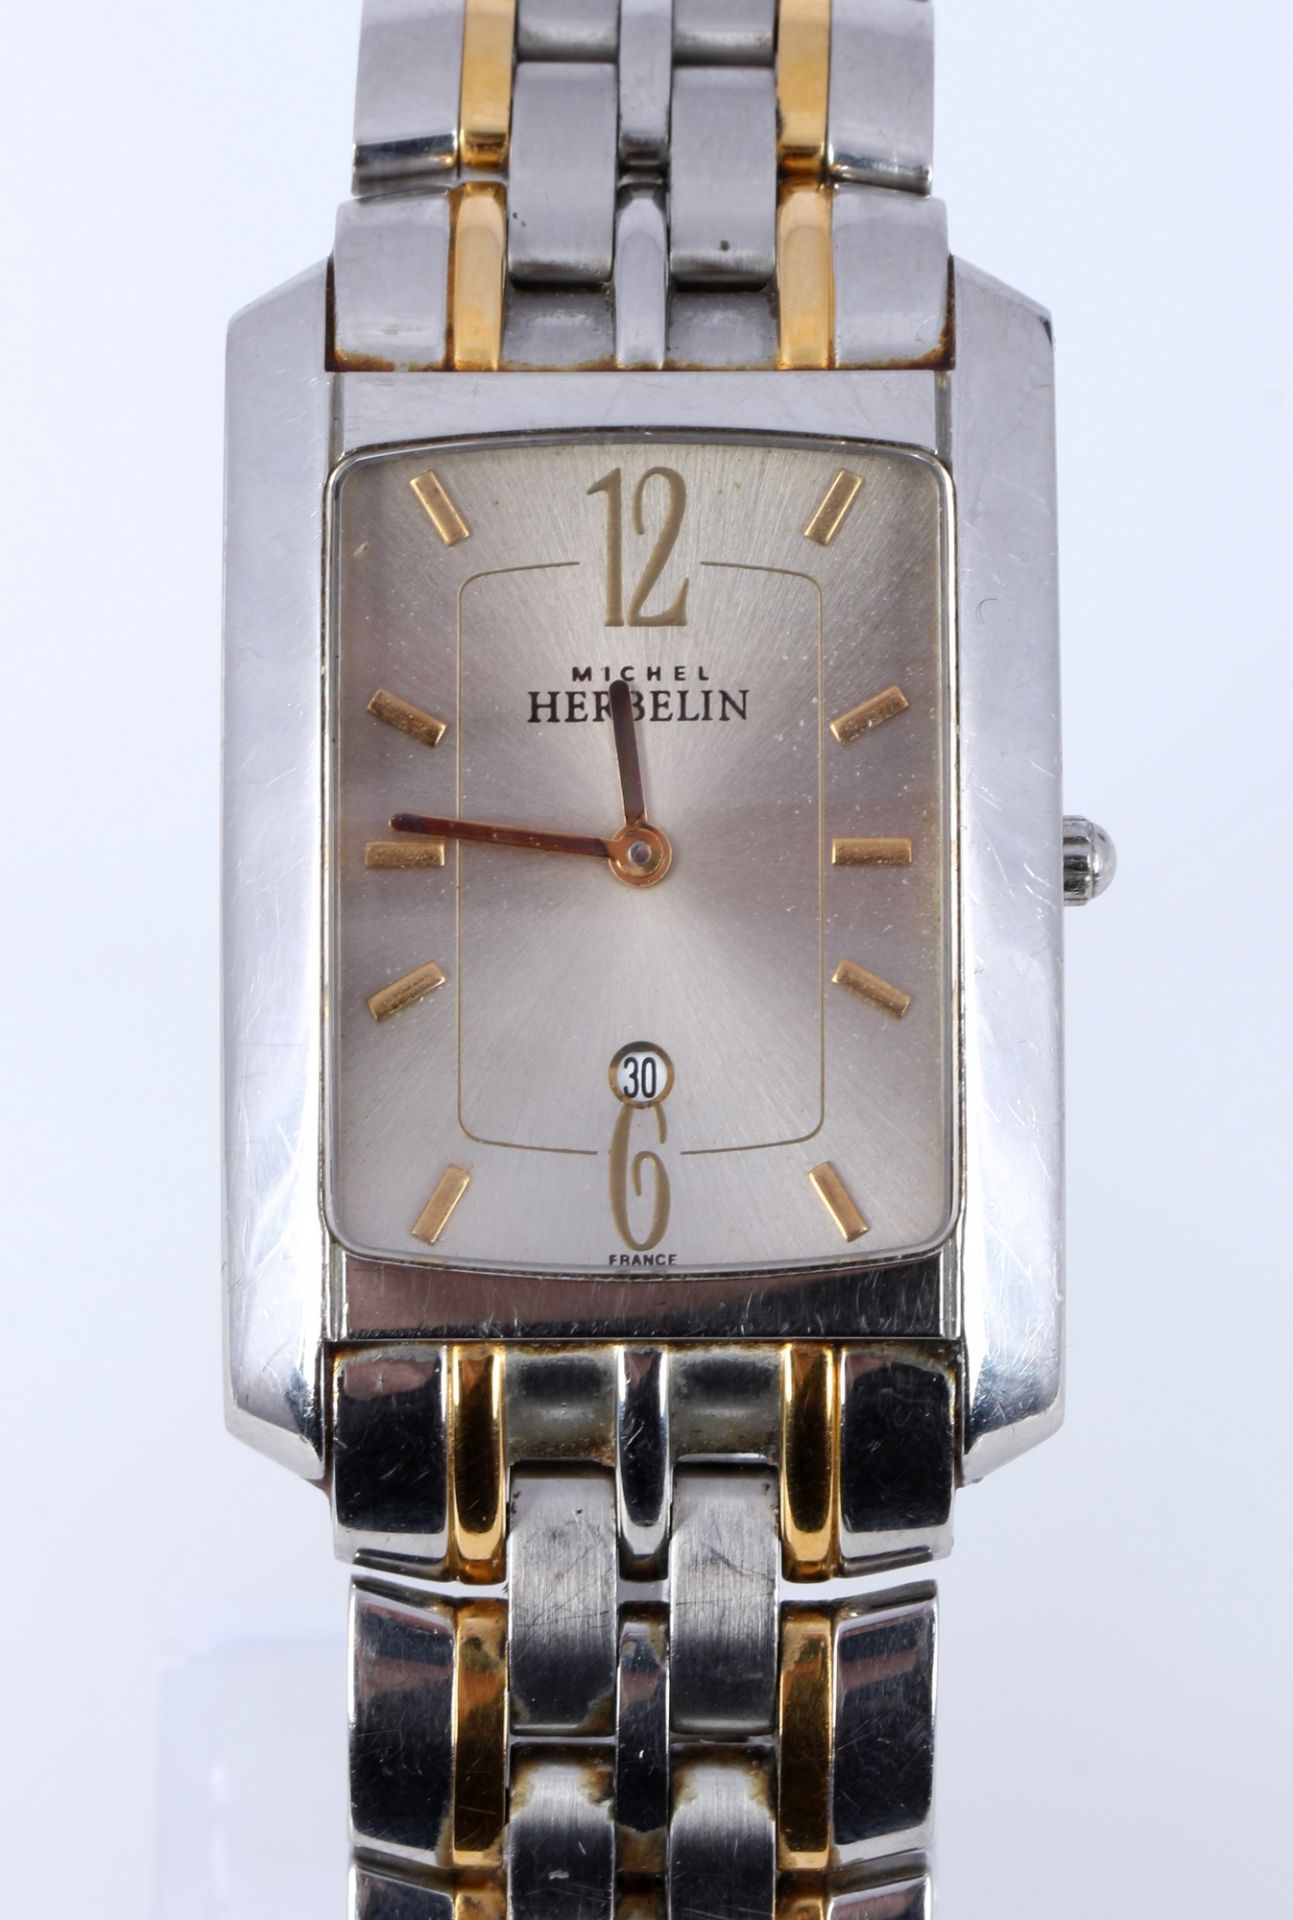 Michel Herbelin Paris Herren Armbanduhr, men's wristwatch, - Image 2 of 7